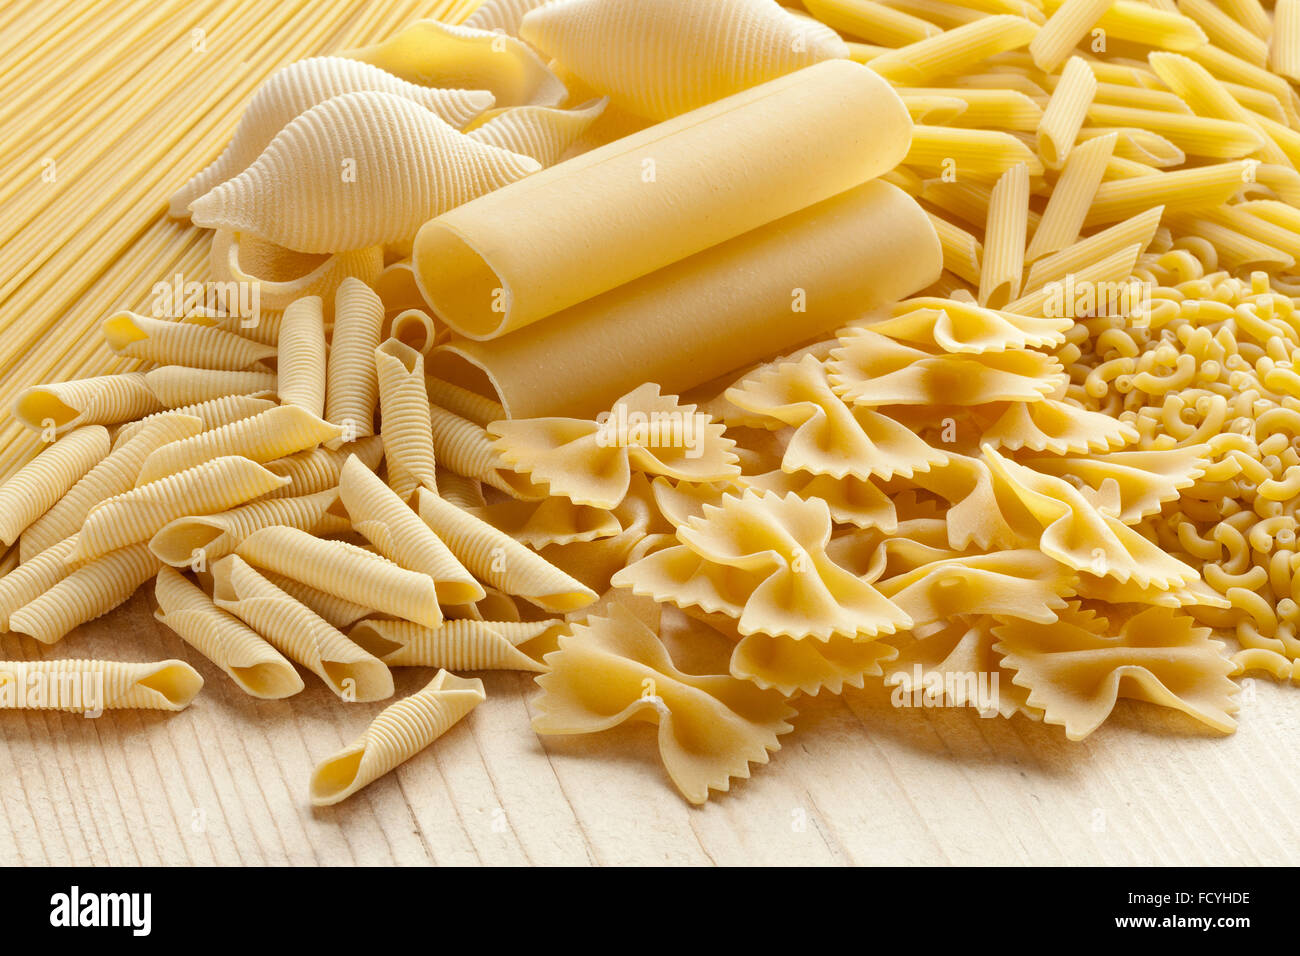 Variety of traditional Italian pasta Stock Photo